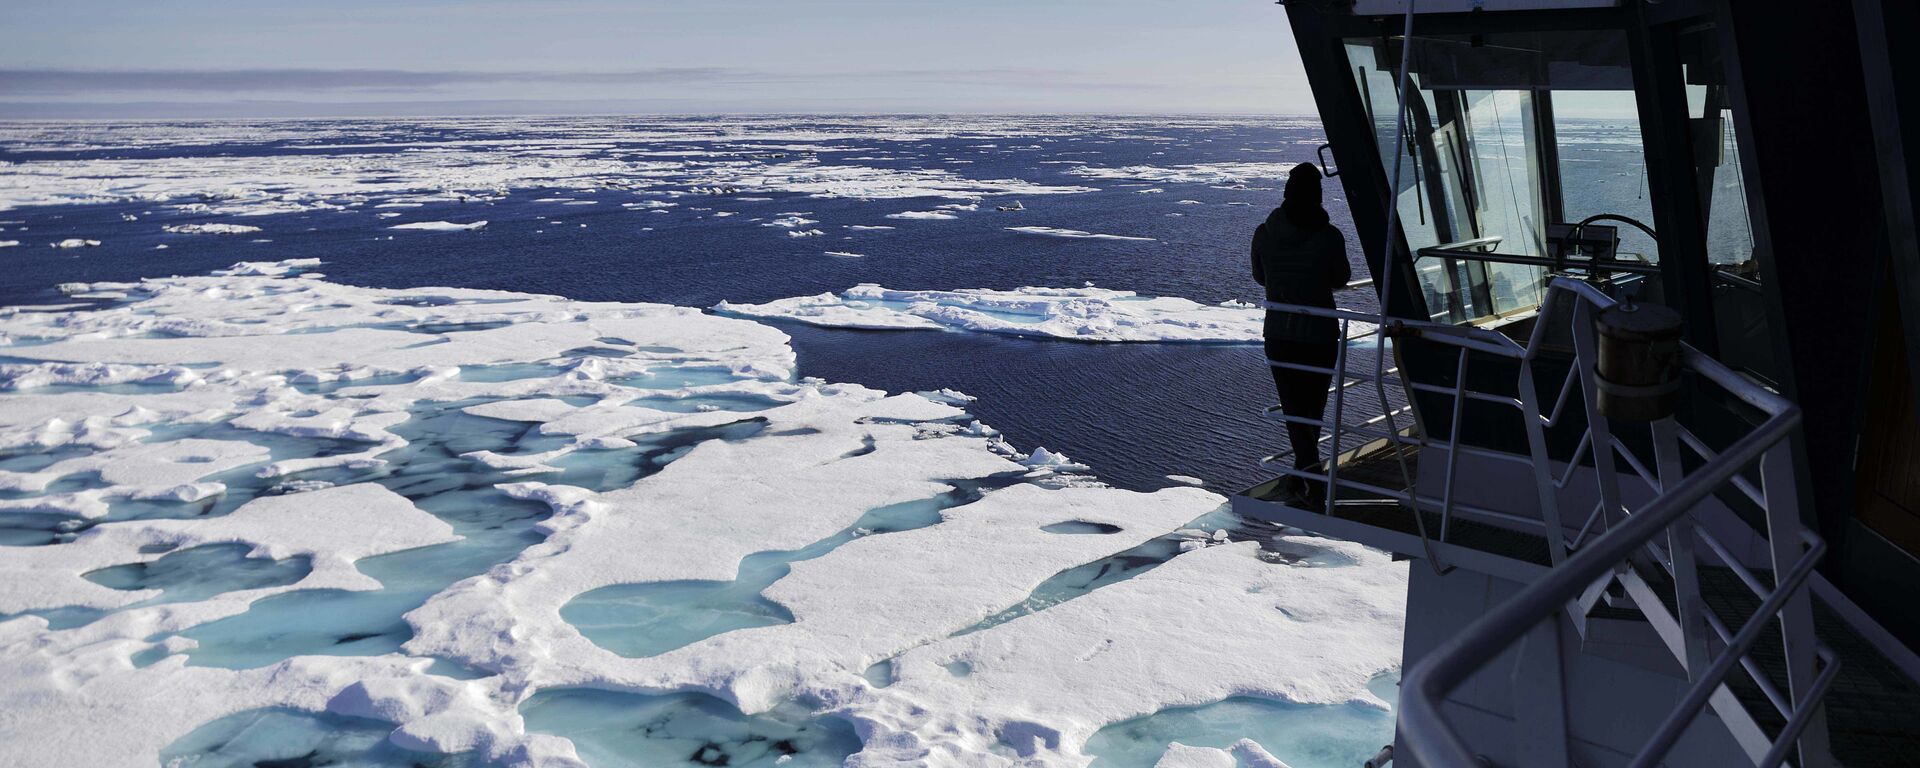 O navio quebra-gelo finlandês MSV Nordica navega através do gelo flutuando no mar de Chukchi, na costa do Alasca. - Sputnik Brasil, 1920, 28.12.2021